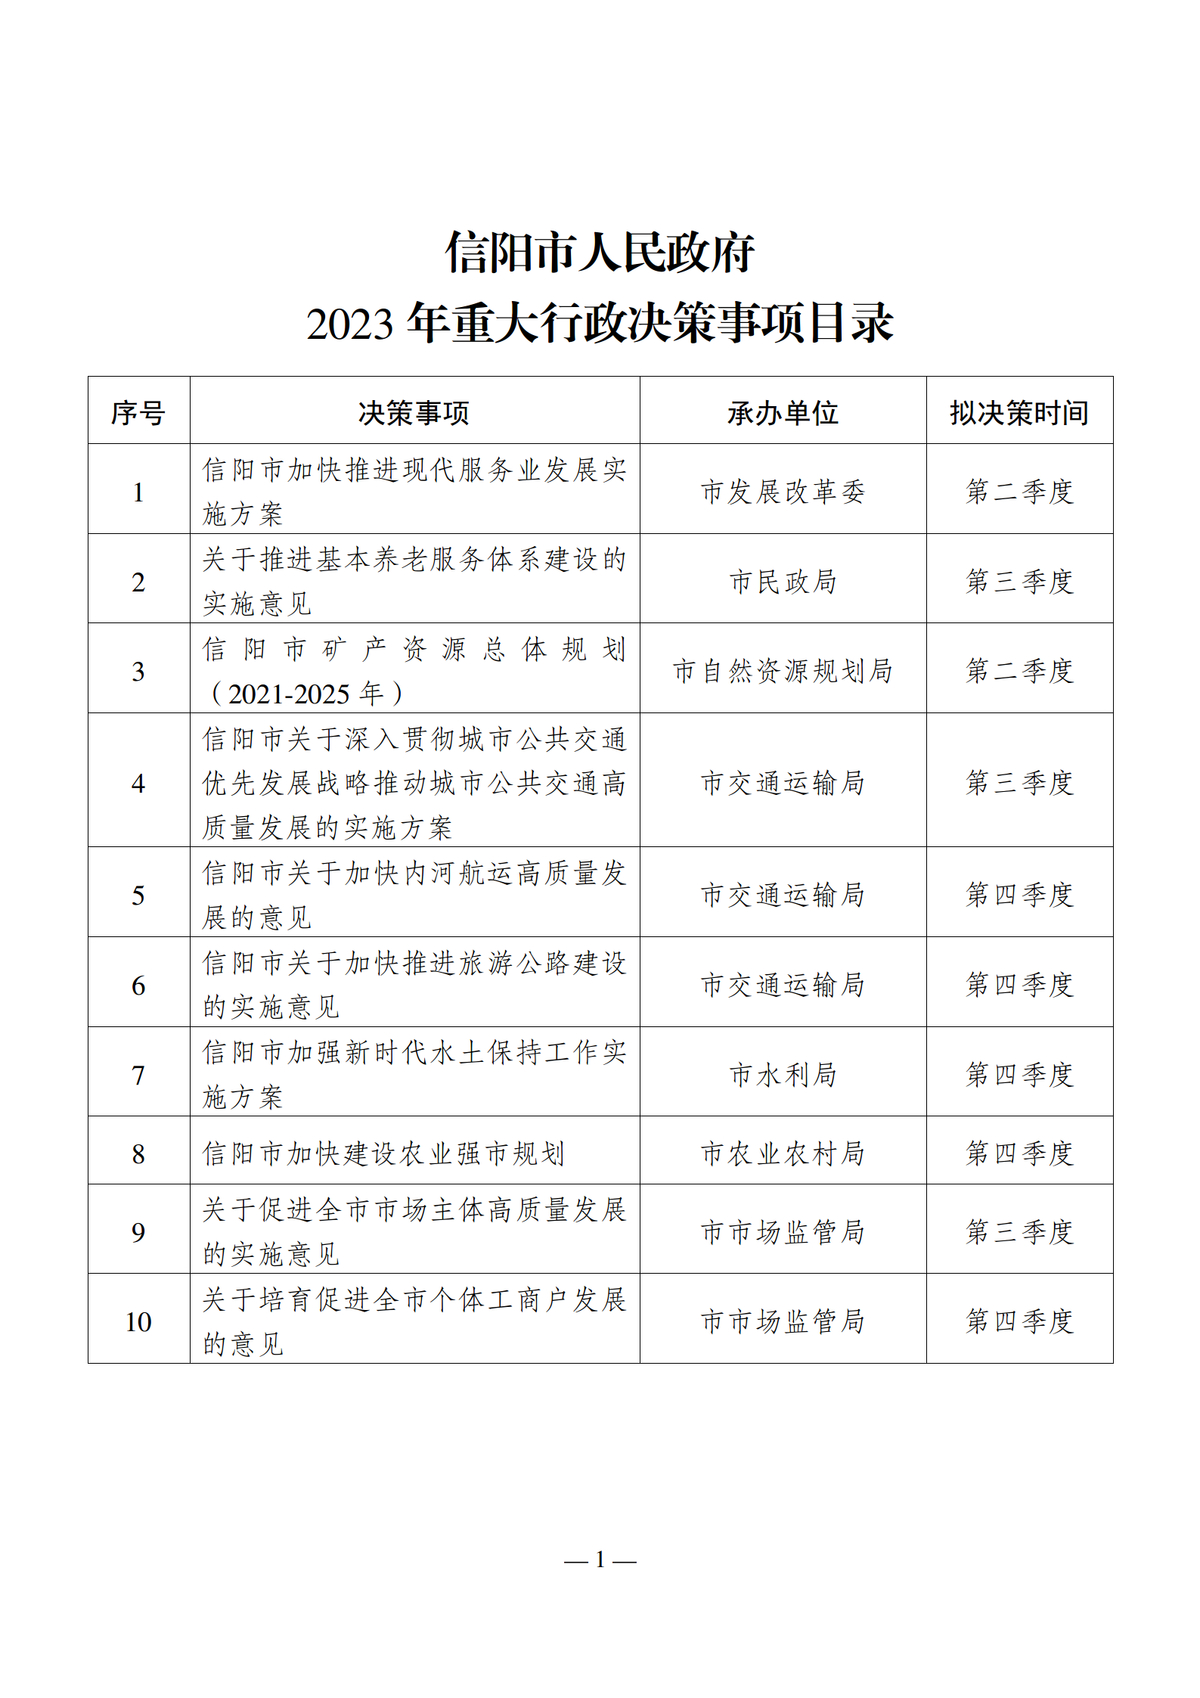 信阳市人民政府2023年重大行政决策事项目录